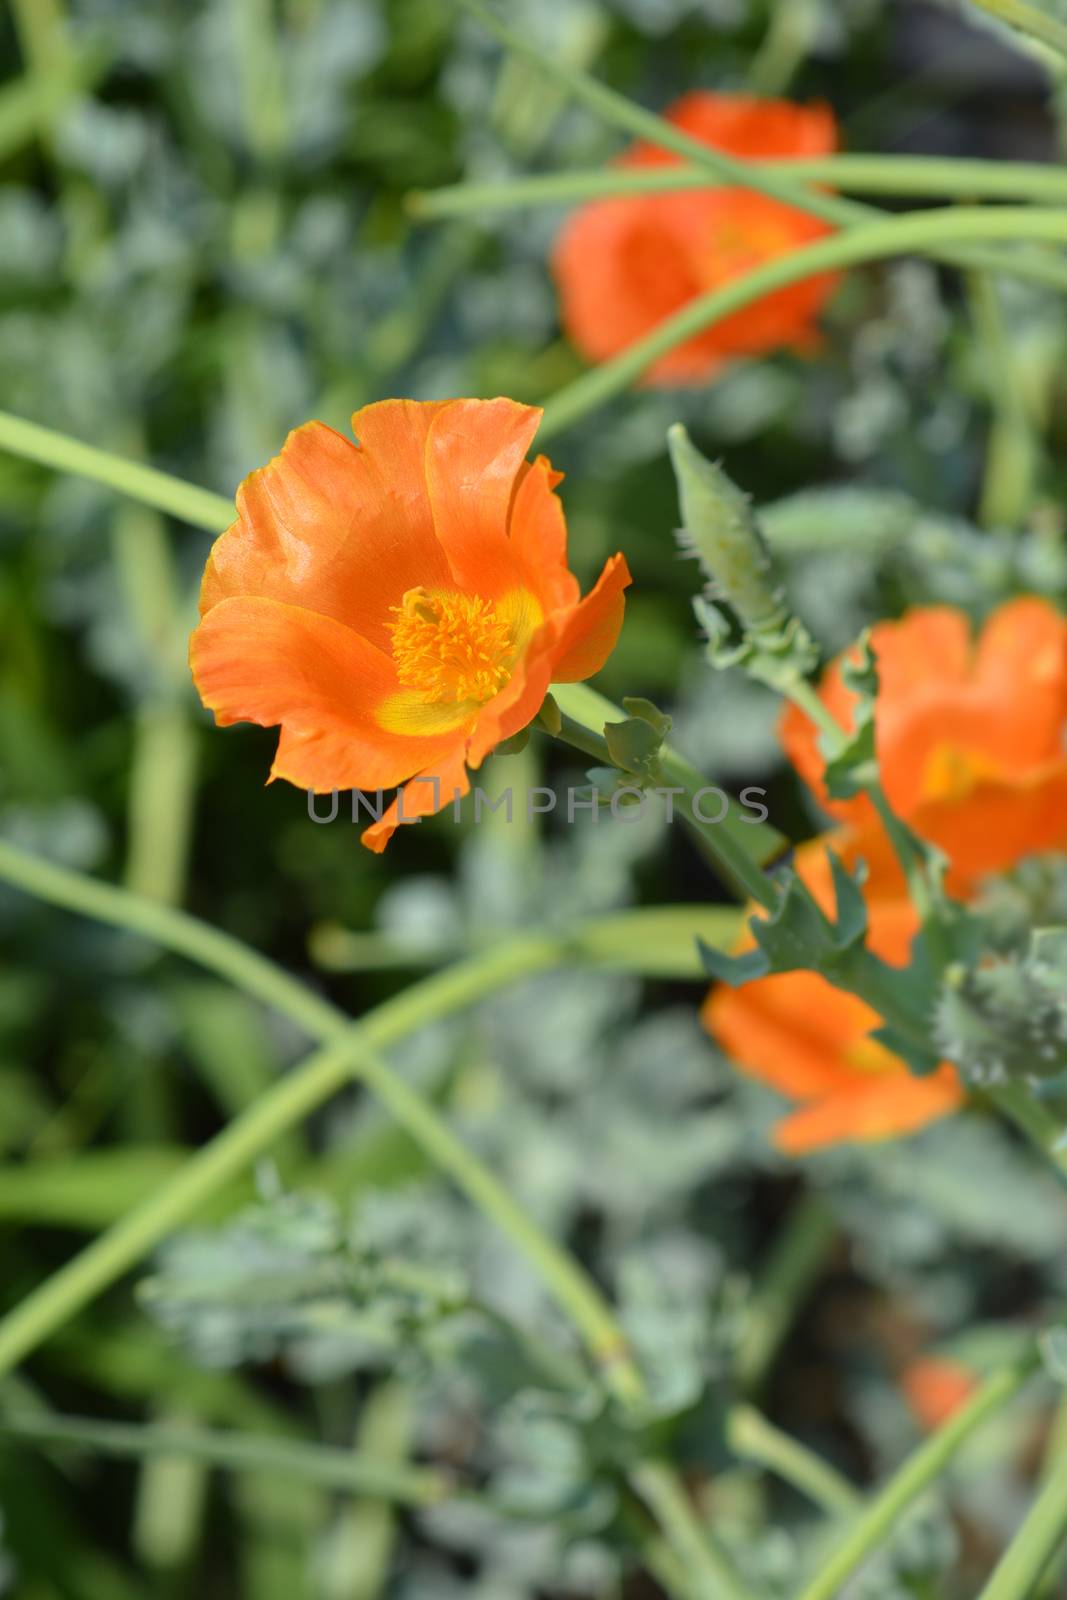 Orange horned poppy flower - Latin name - Glaucium flavum